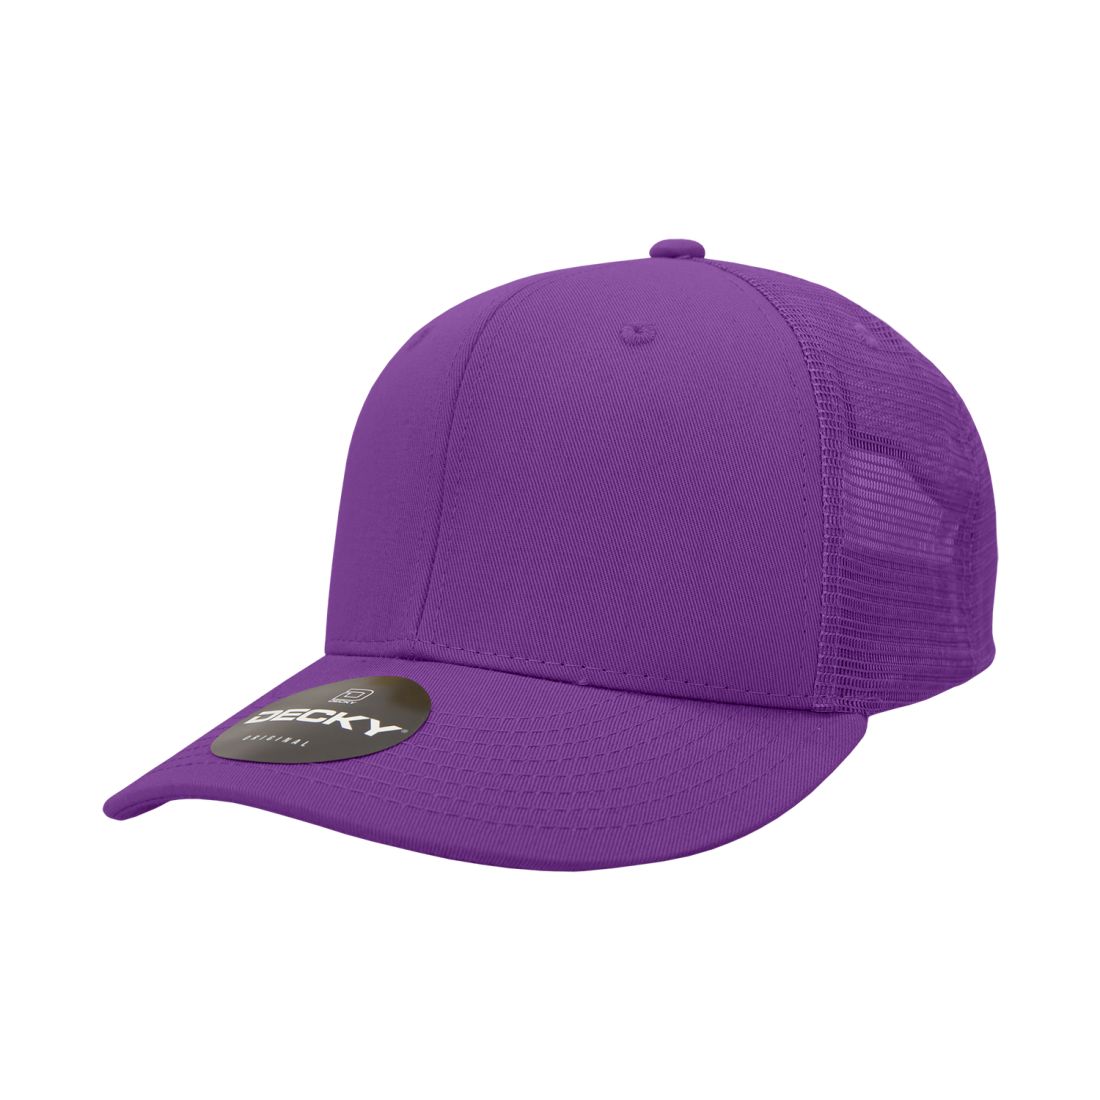 Purple color variant